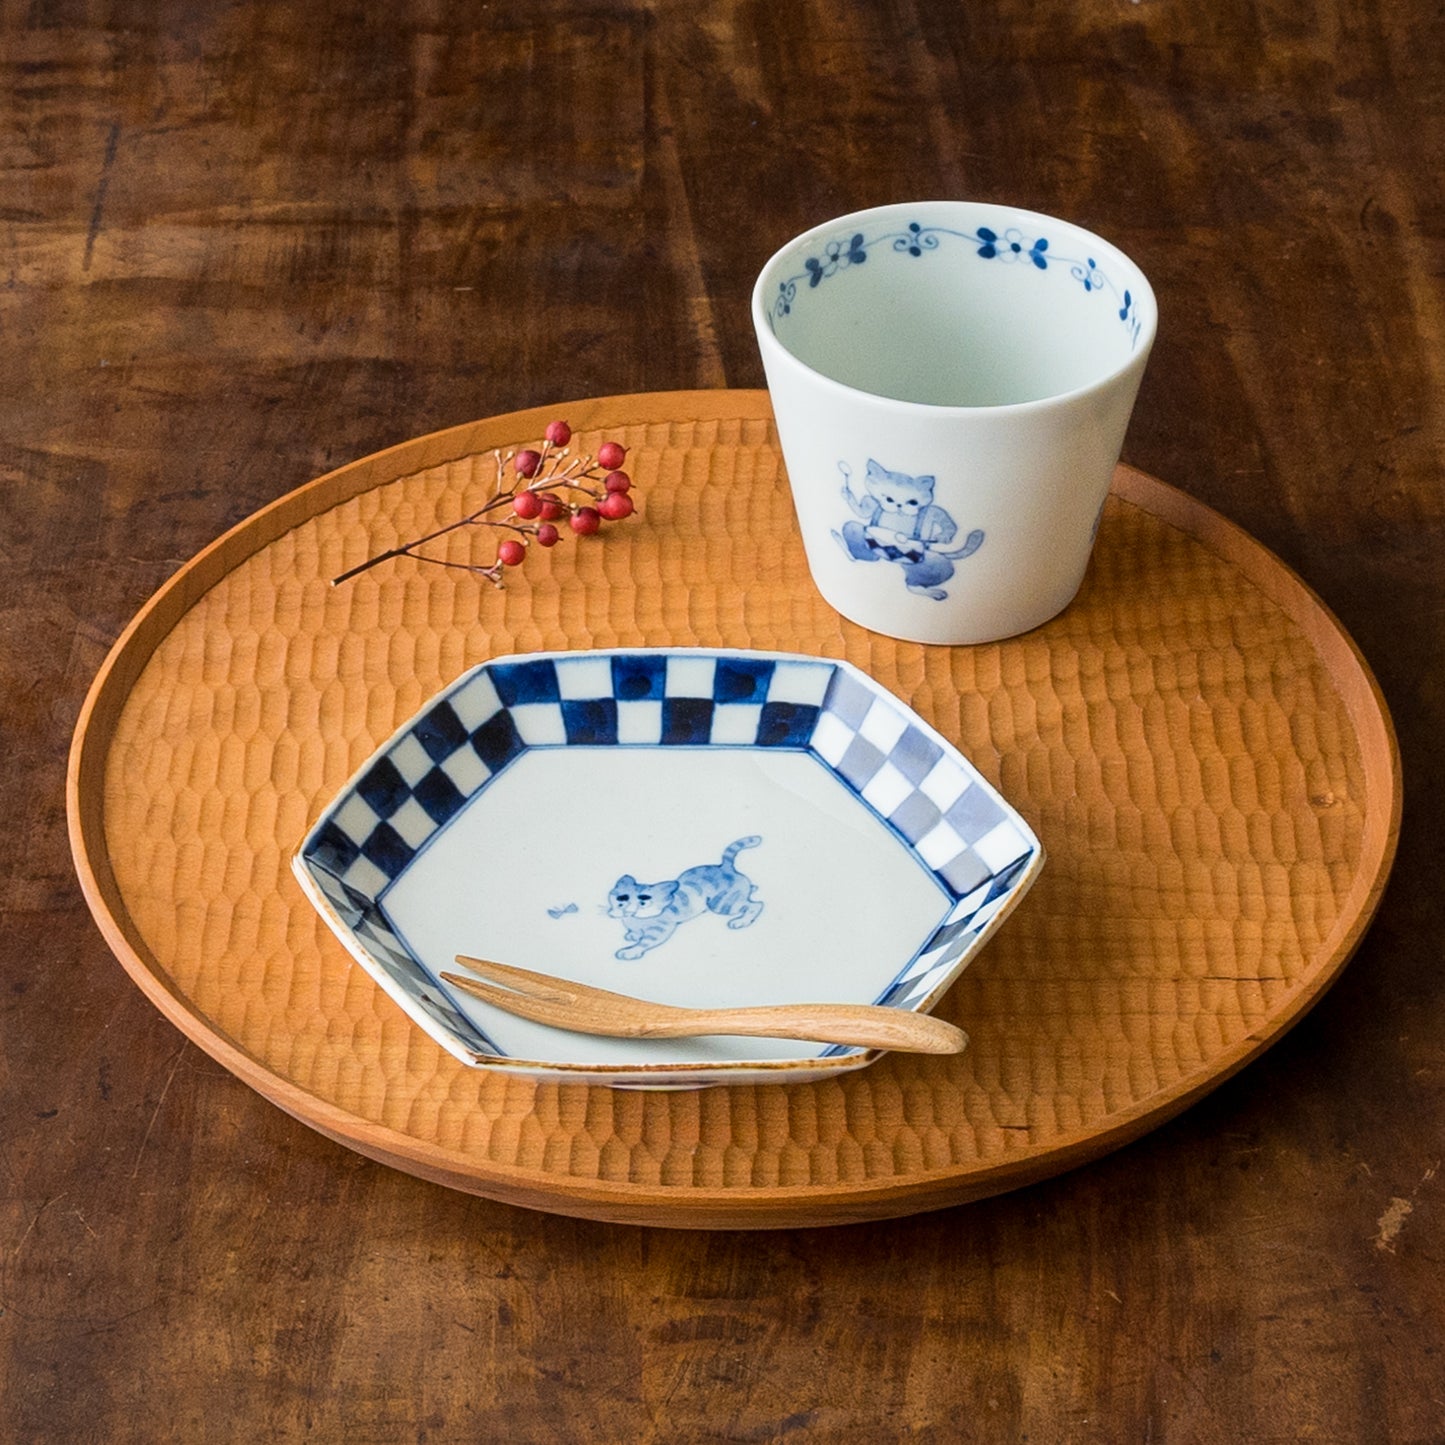 石川理恵さんの六角皿トラとそば猪口猫太鼓